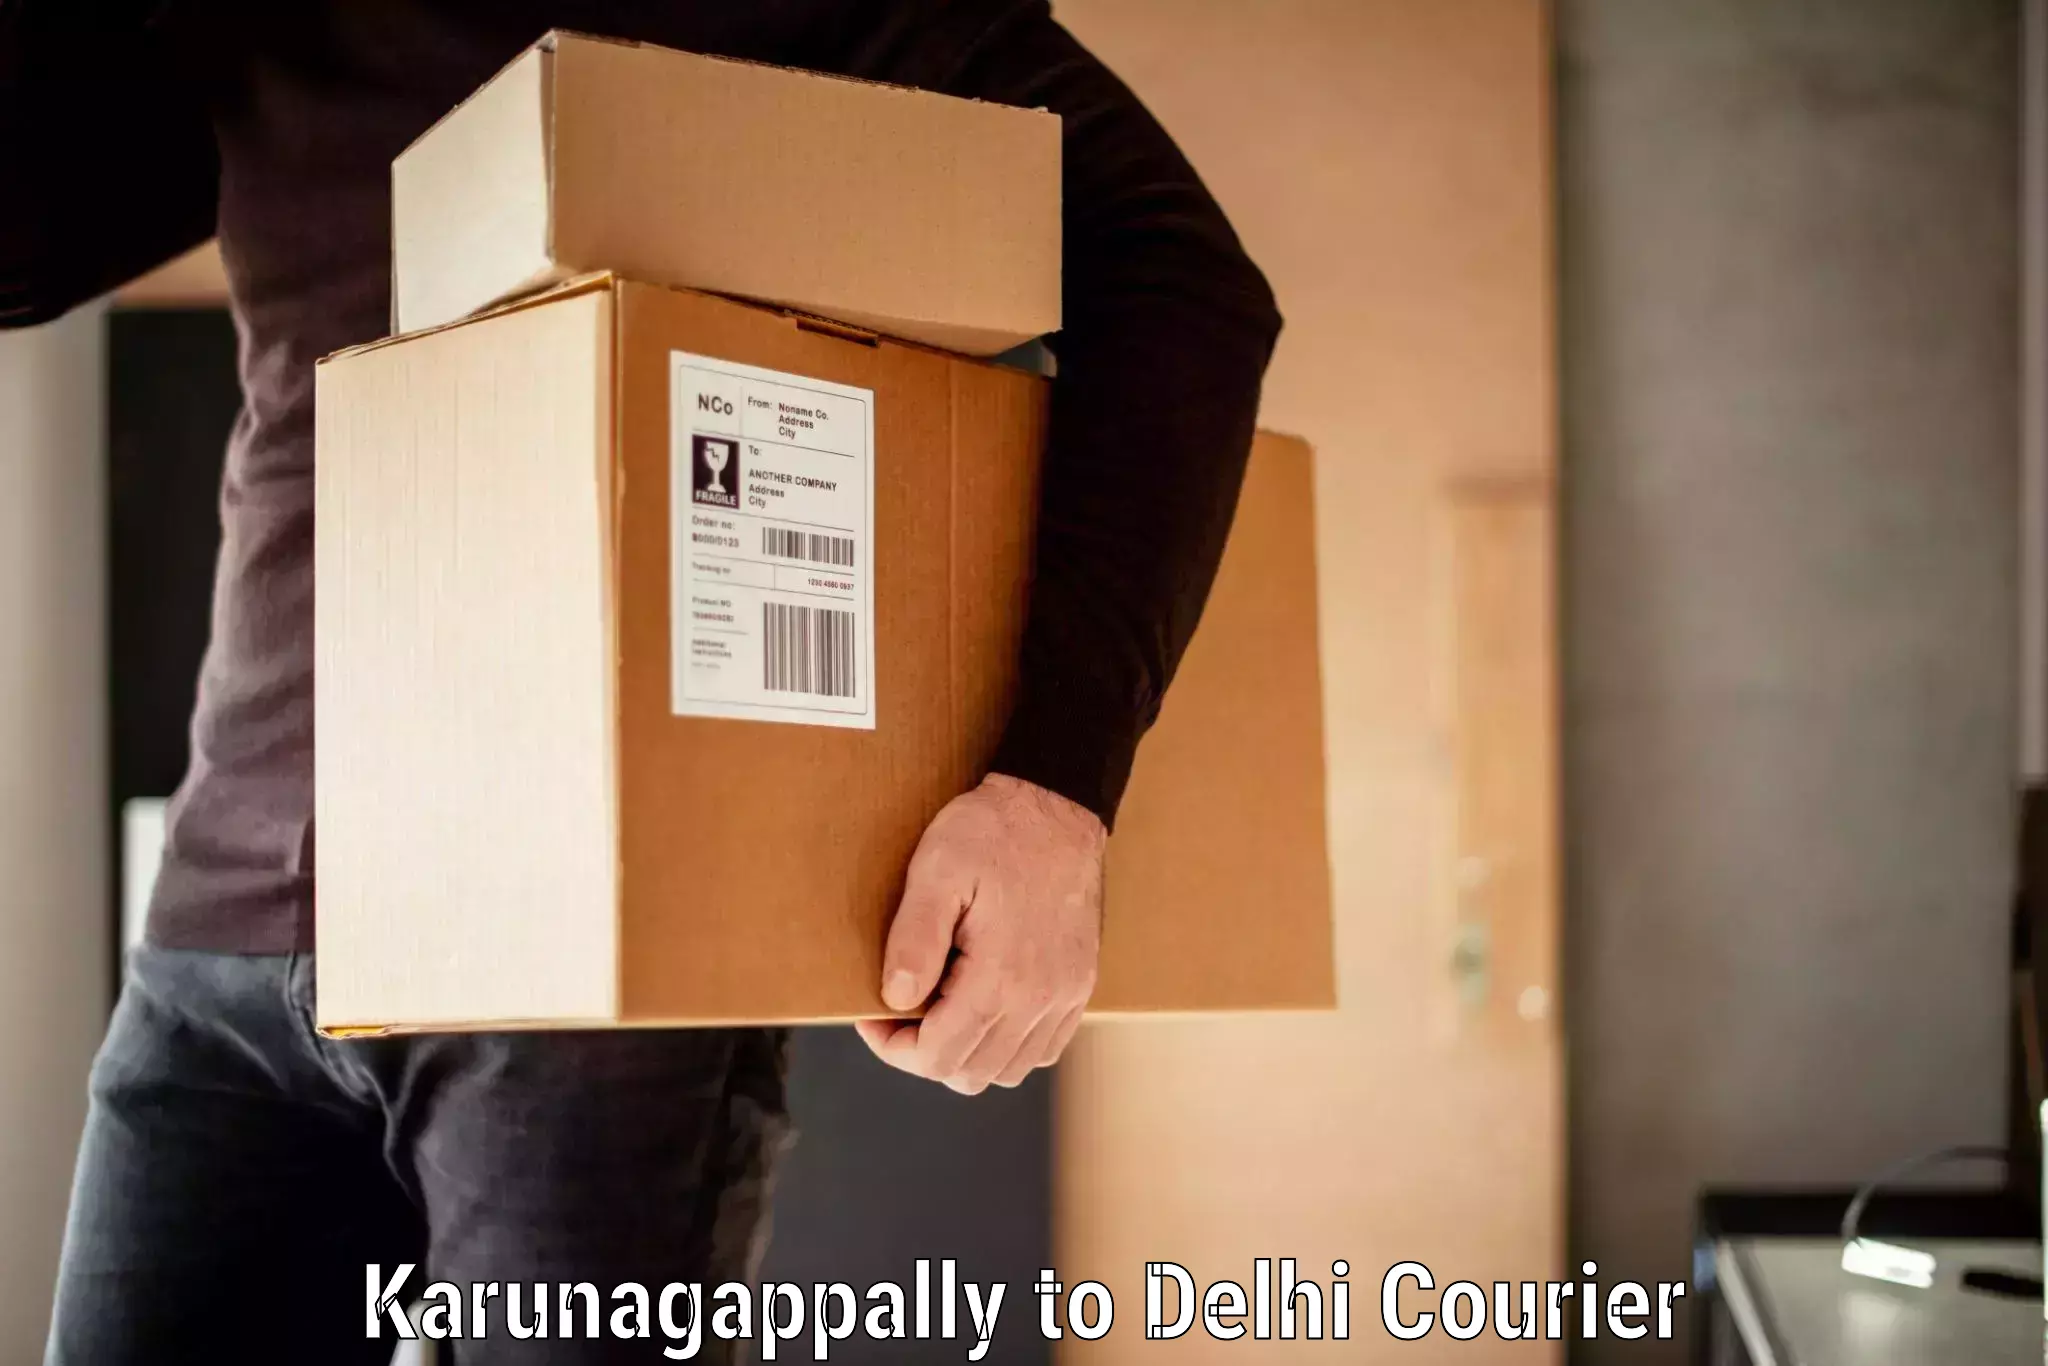 Same day luggage service Karunagappally to Jawaharlal Nehru University New Delhi